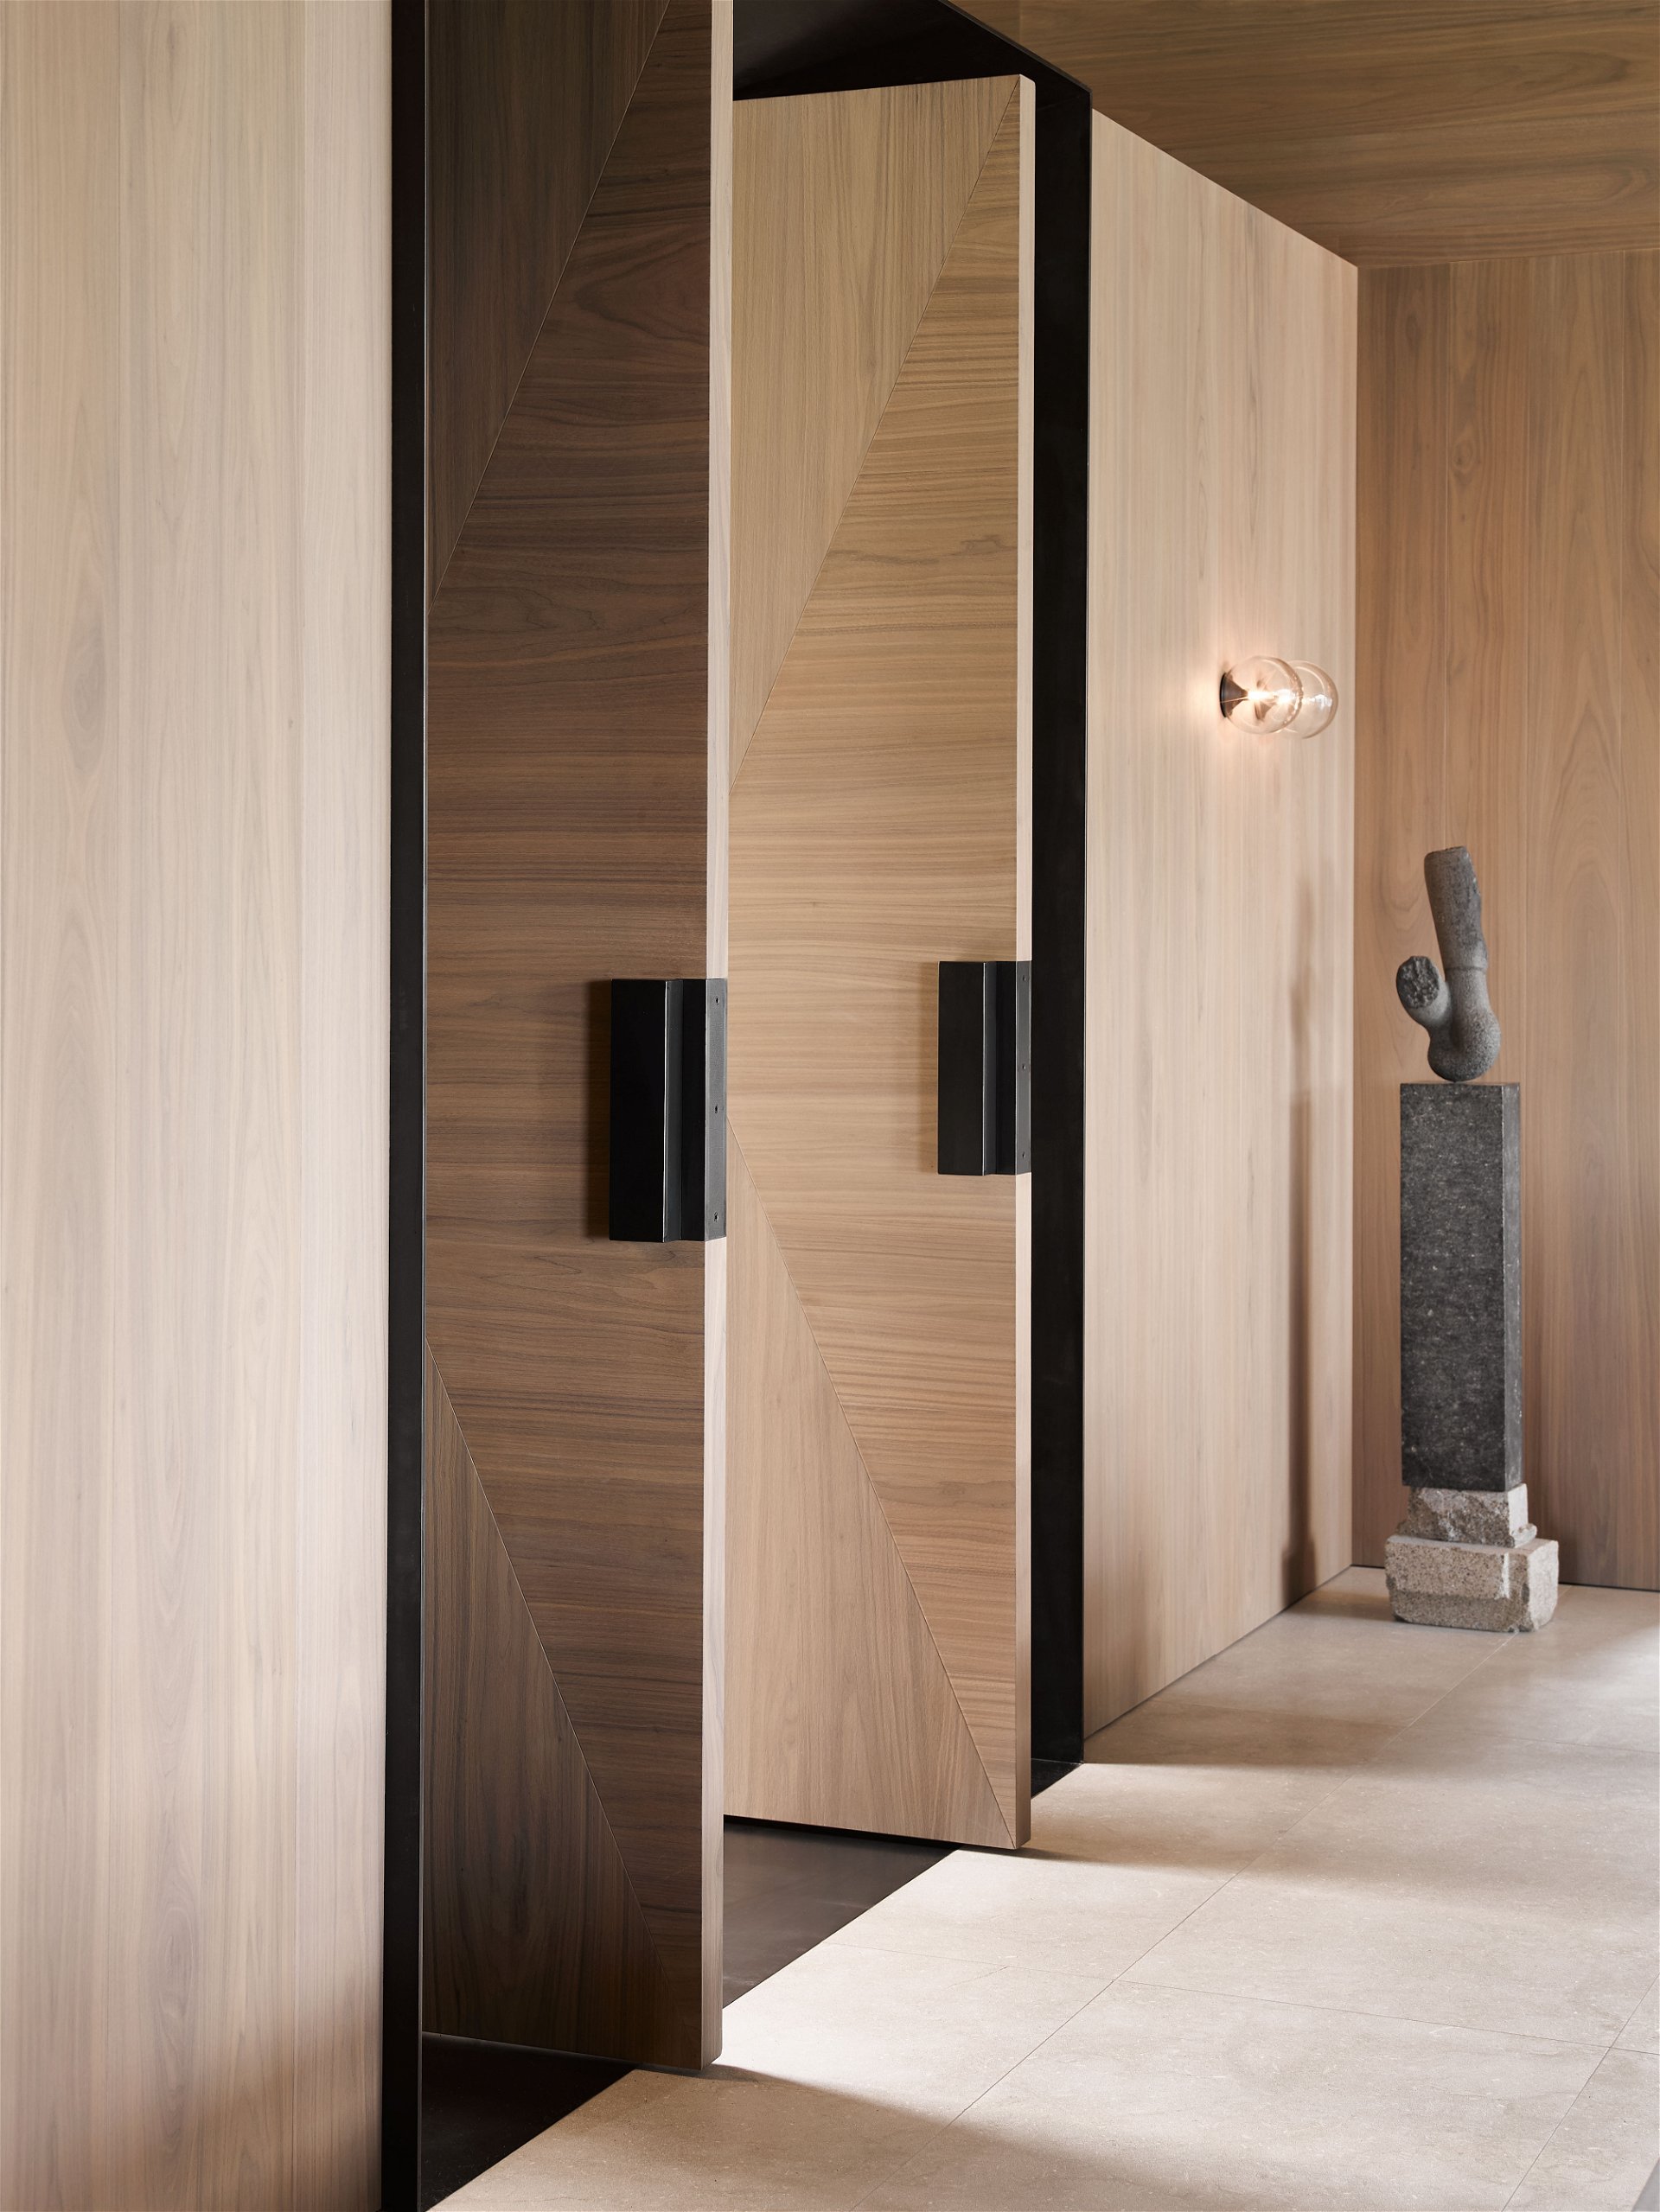 Eleganter Holzweg: In diesem Einfamilienhaus in der Kochau nahe Kitzbühel hat Bernd Gruber das gesamte Programm abgedeckt – von der Konzeption über die Planung bis zur Ausführung der gesamten Inneneinrichtung.